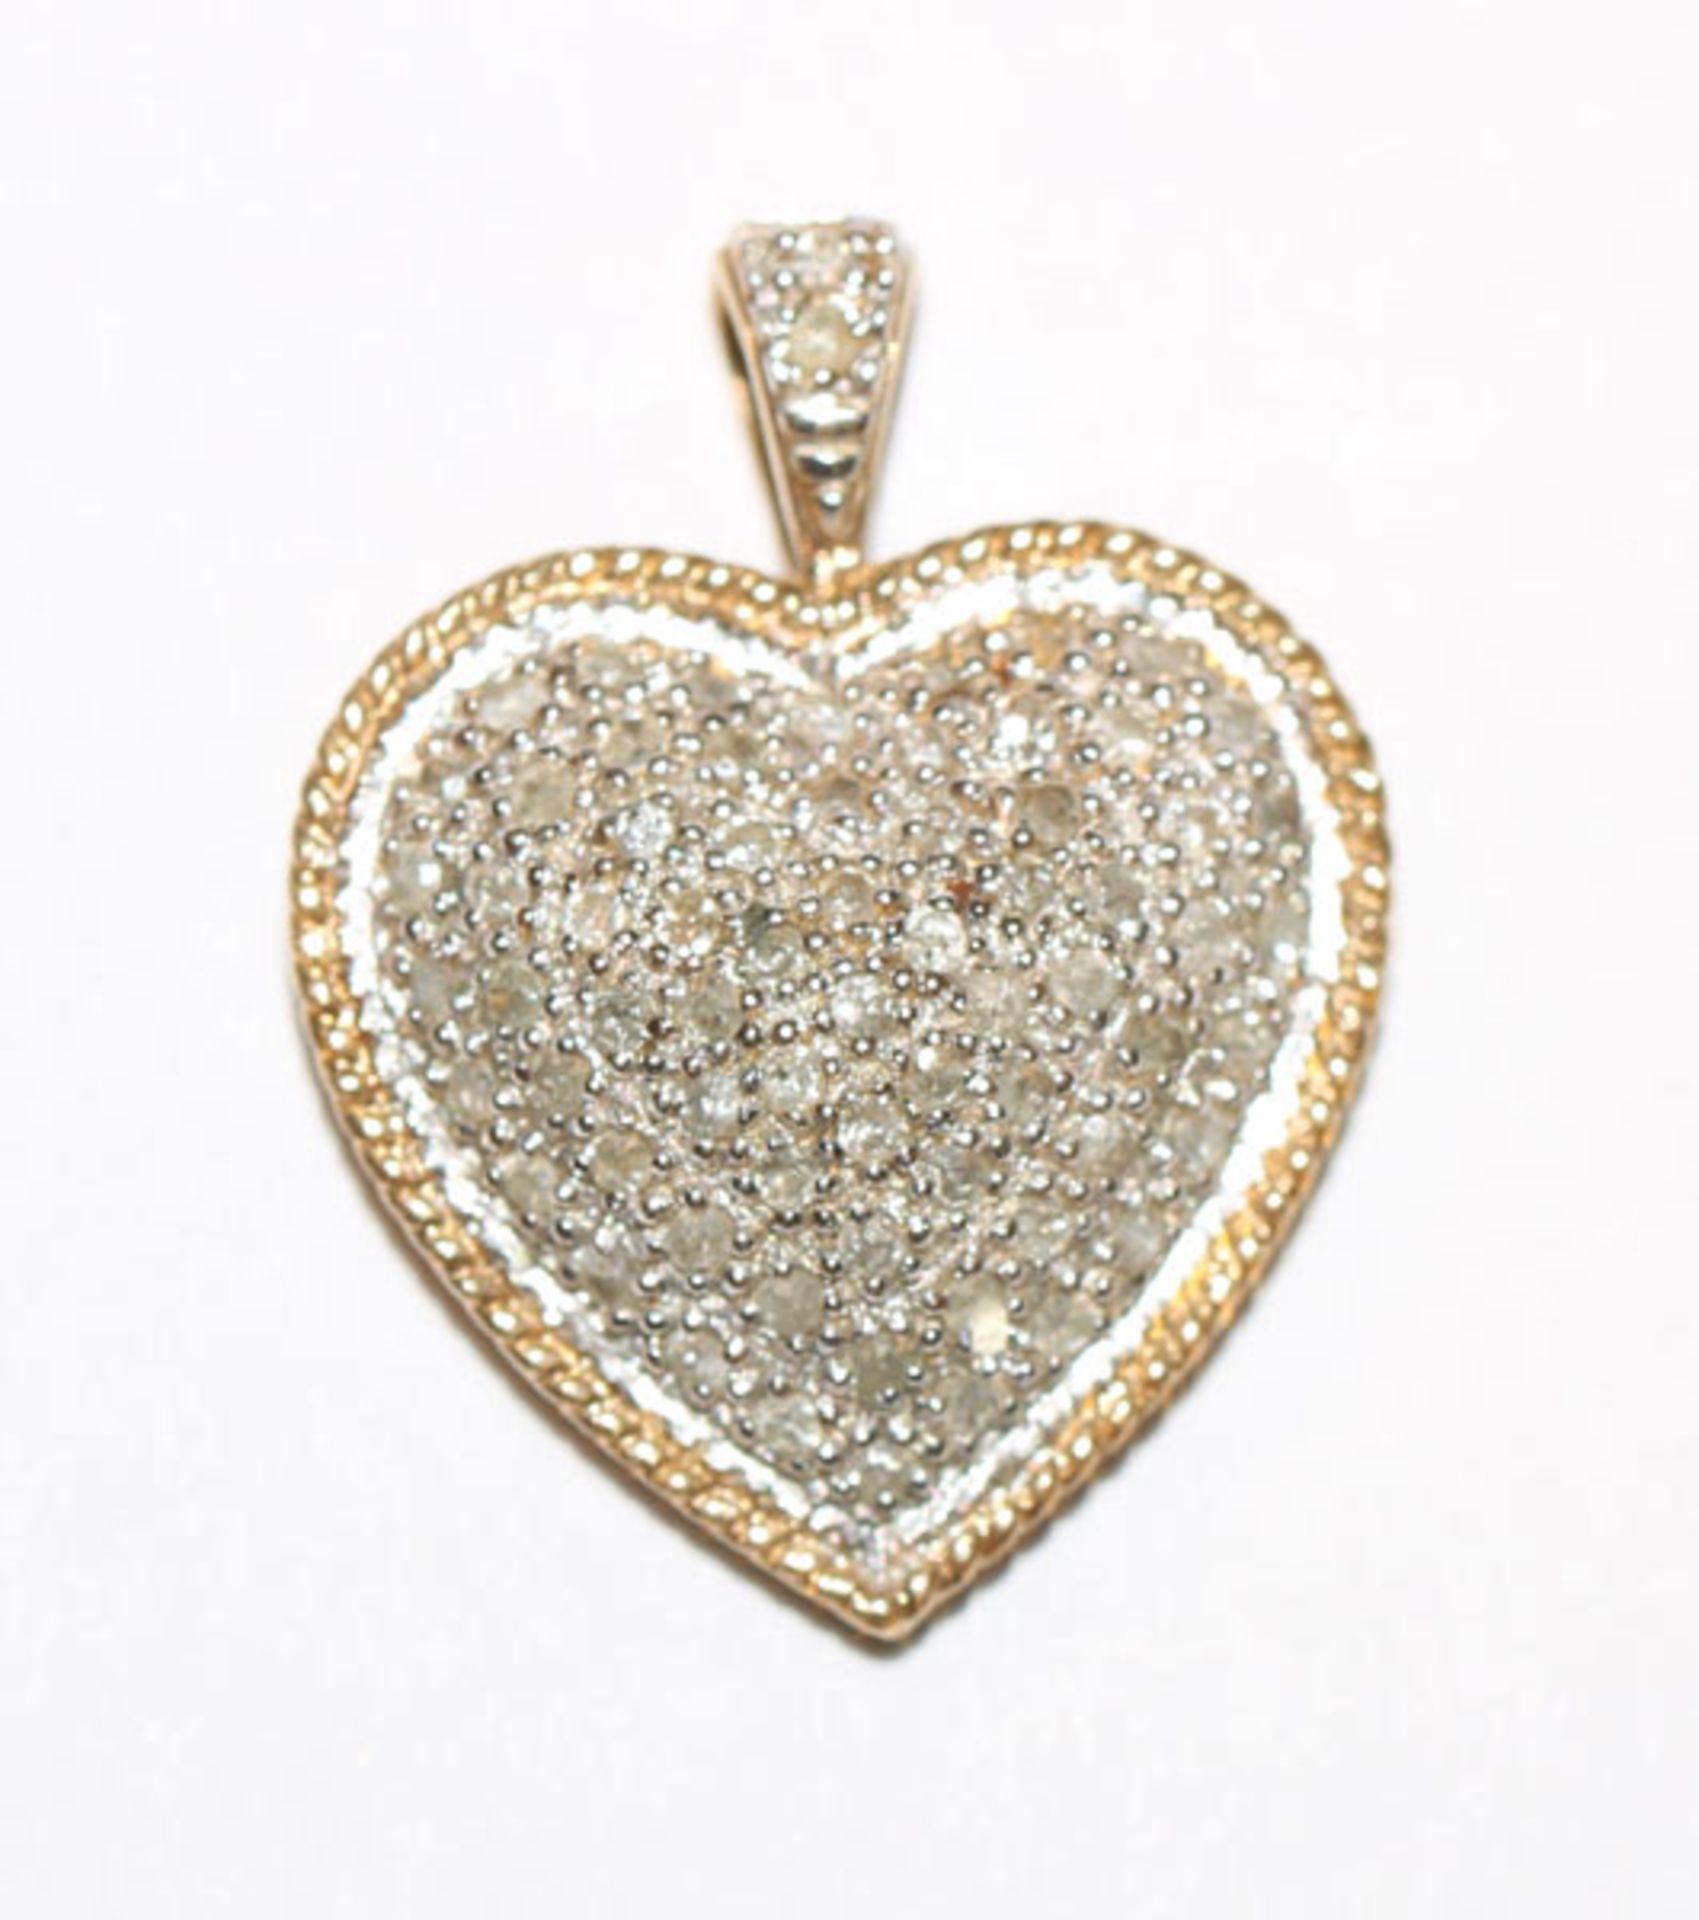 10 k Weiß- und Gelbgold Herz-Anhänger mit Diamanten besetzt, L 2,5 cm